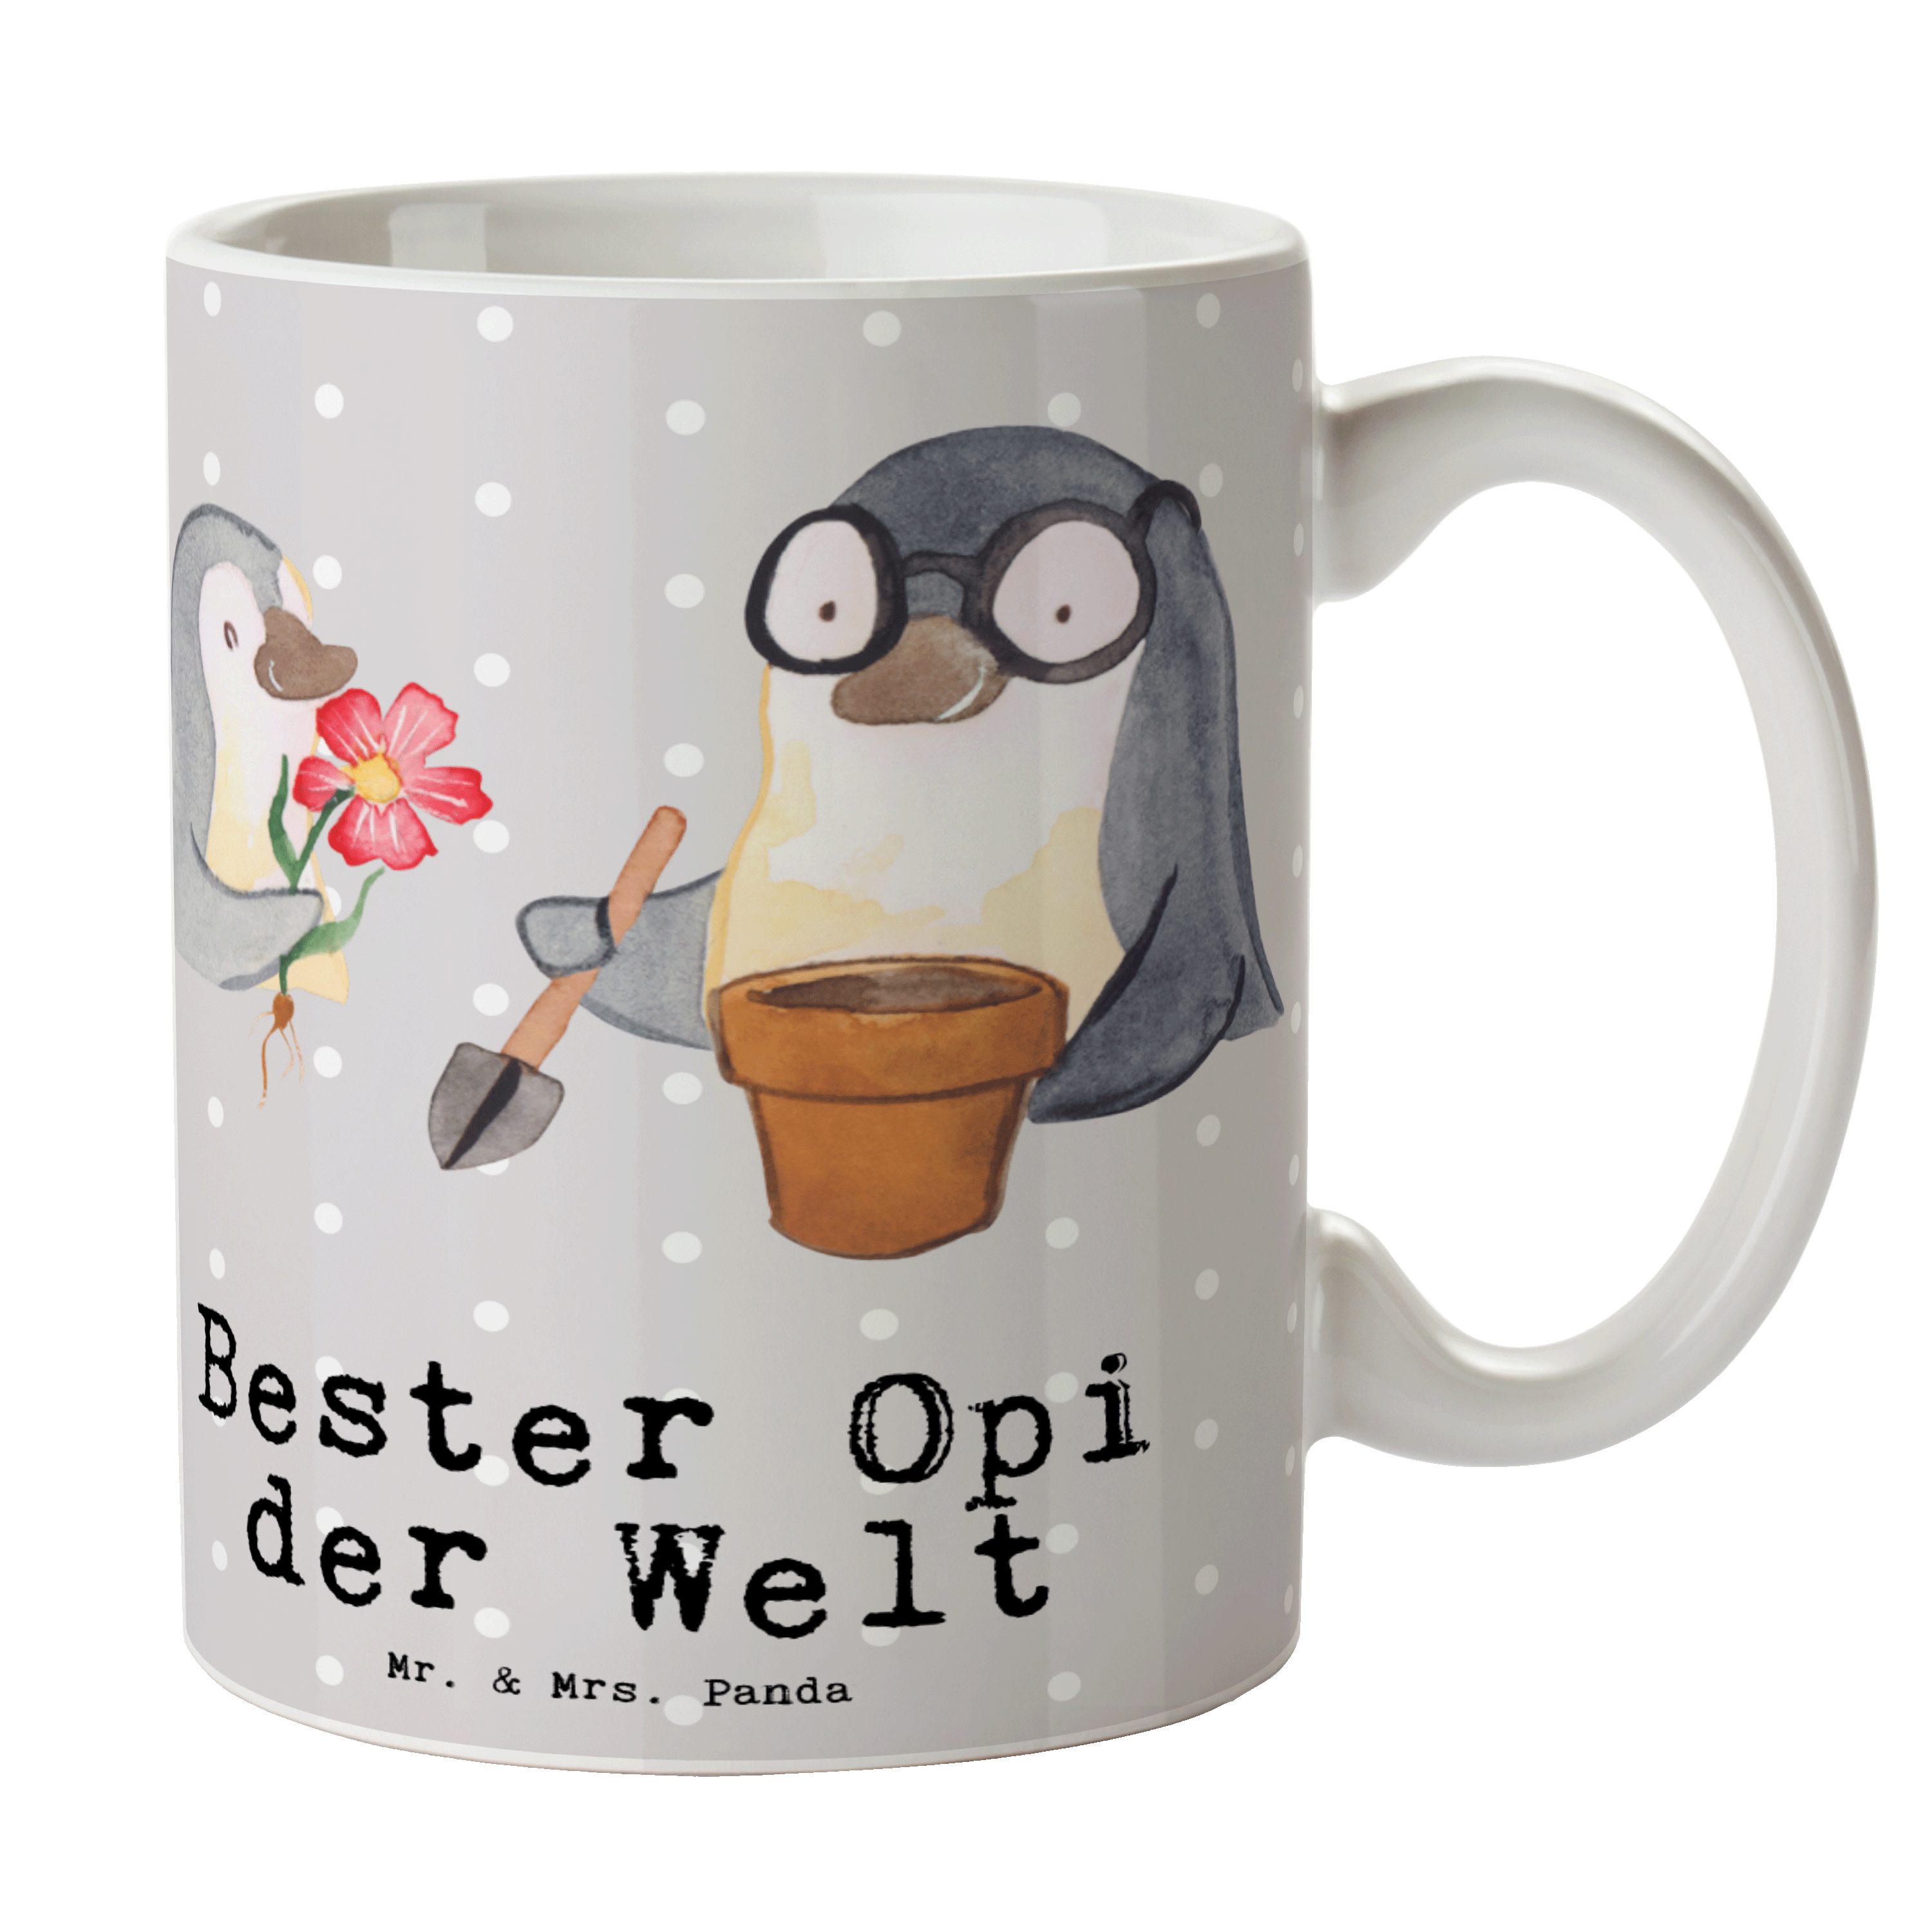 Geschenk, Tasse Opi Sprüche, Bester Grau & Mr. Tasse Pinguin der Mrs. Panda Keramik Pastell Welt - -